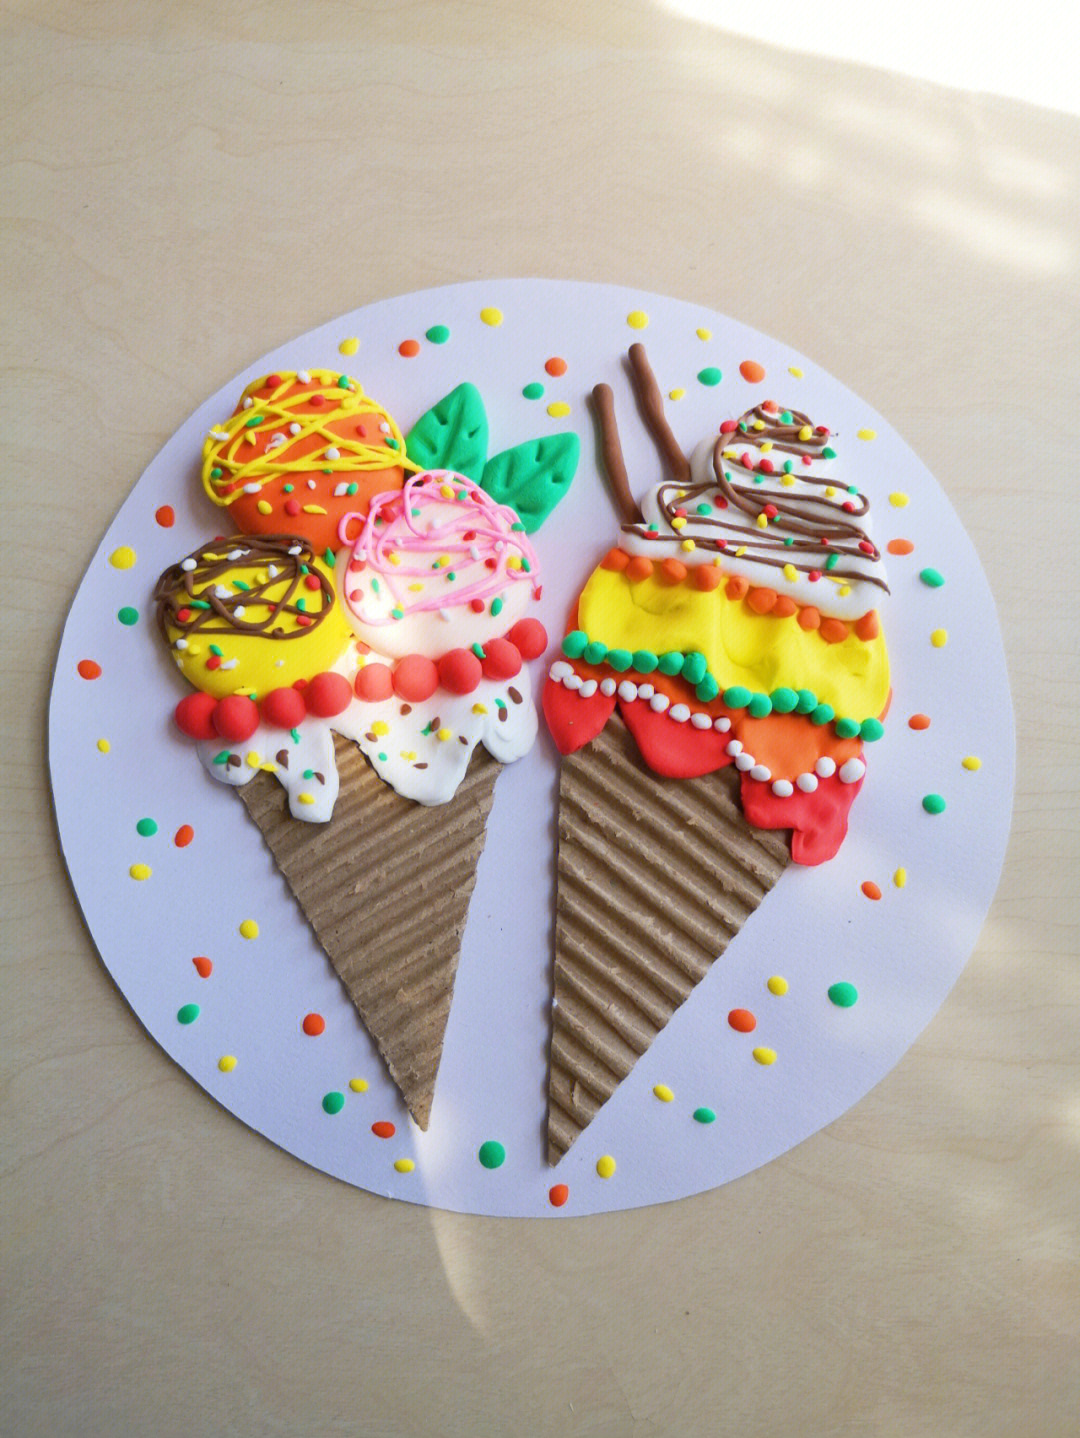 橡皮泥做成的冰淇淋图片